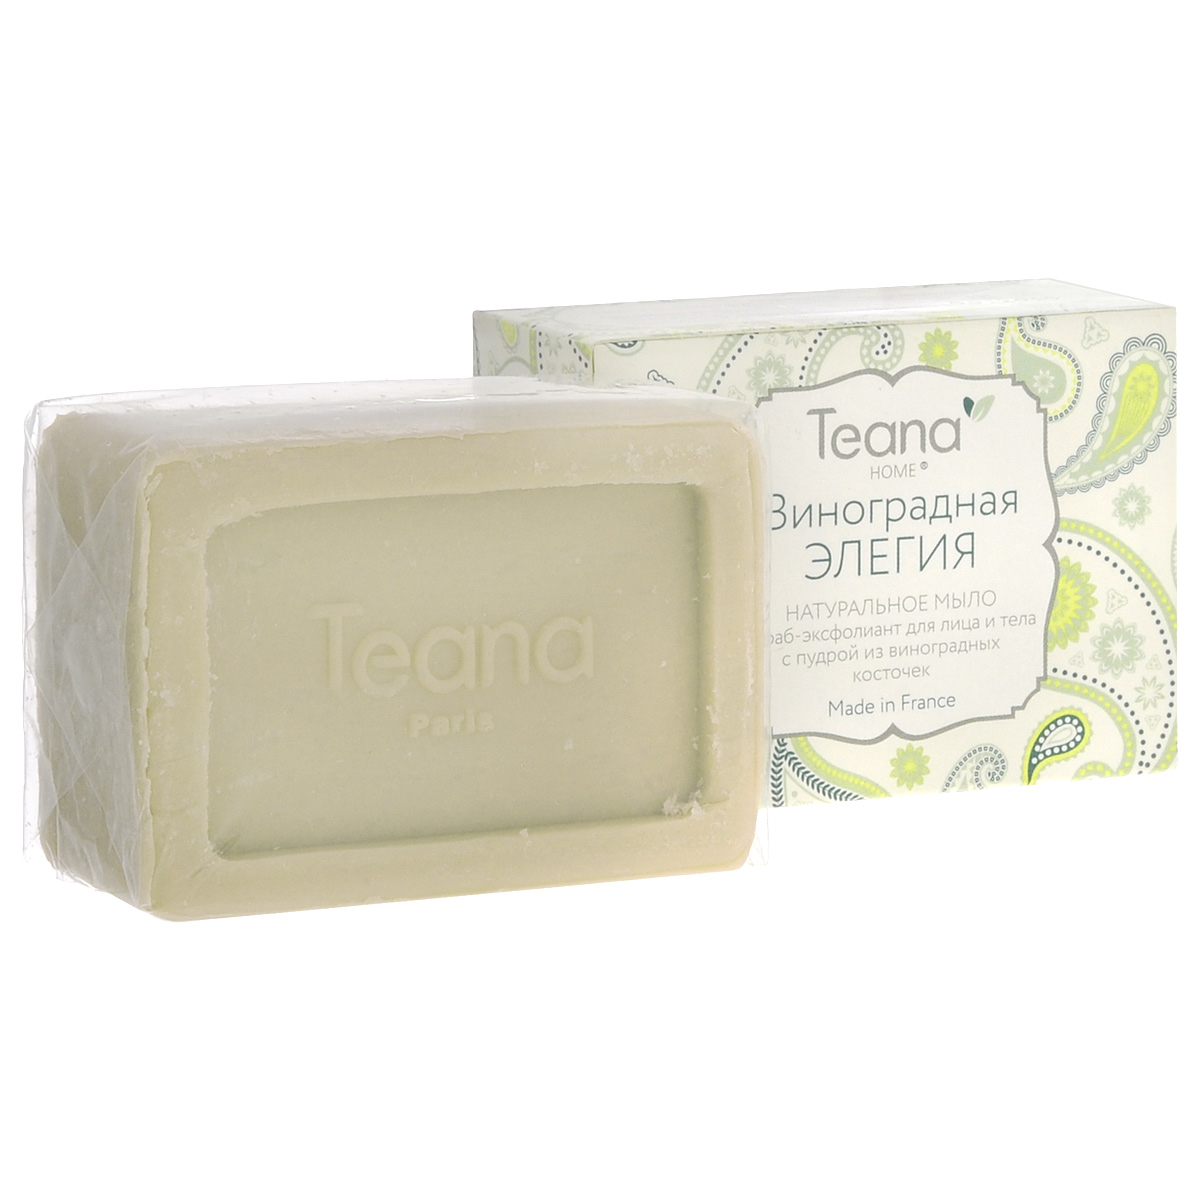 Teana Натуральное мыло скраб-эксфолиант для лица и тела 